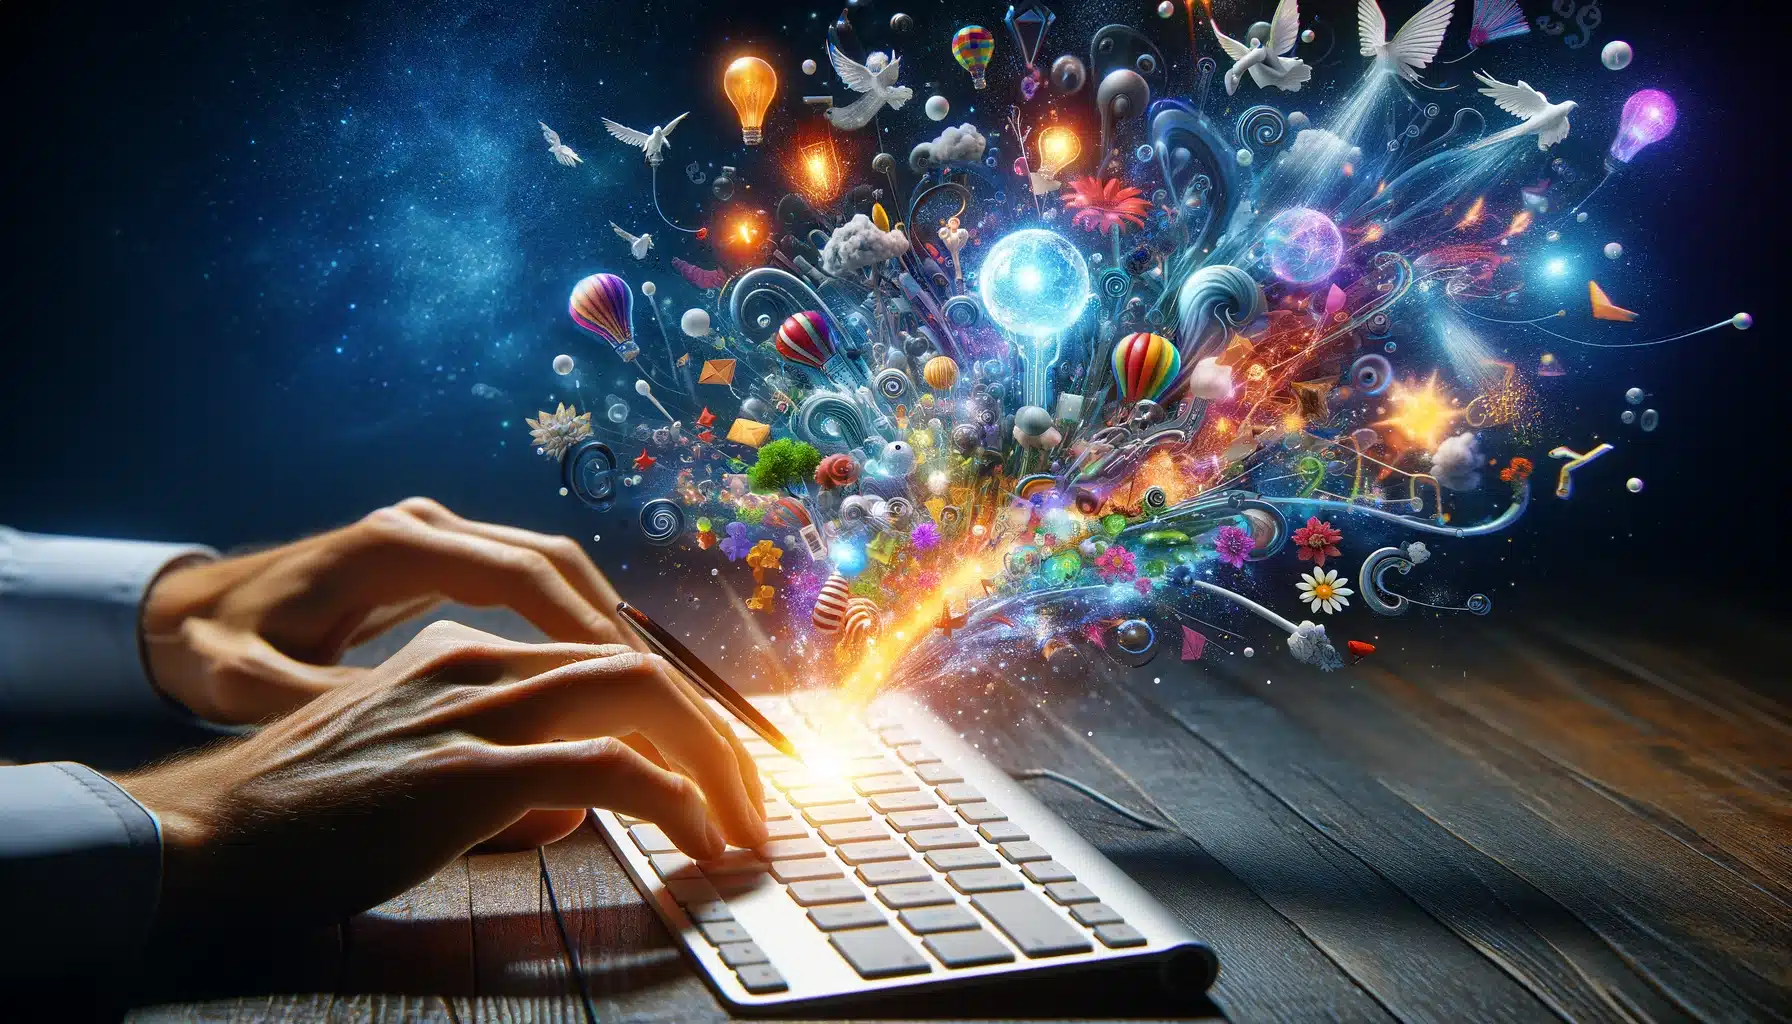 Vue en gros plan et à la première personne des mains tapant sur un clavier d'ordinateur, avec des éléments imaginaires émergeant directement de l'écran, créant une scène magique où la fantaisie et la réalité se fondent.